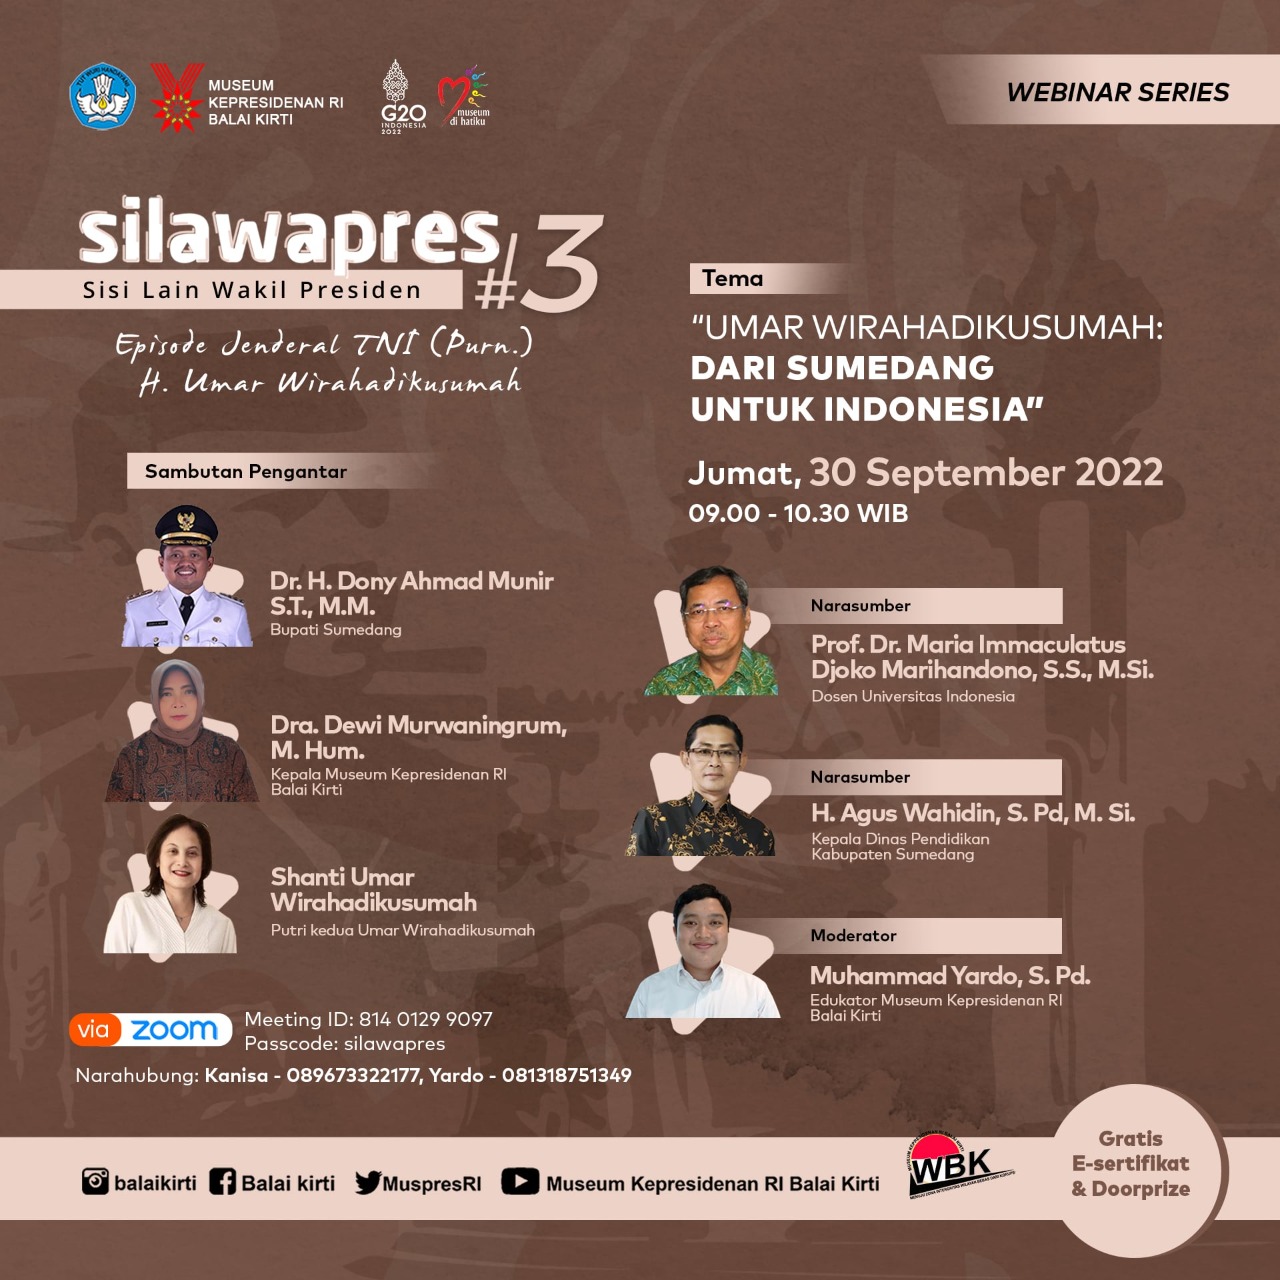 SILAWAPRES#3: JENDERAL TNI (PURN) UMAR WIRAHADIKUSUMAH “Umar Wirahadikusumah: Dari Sumedang Untuk Indonesia”